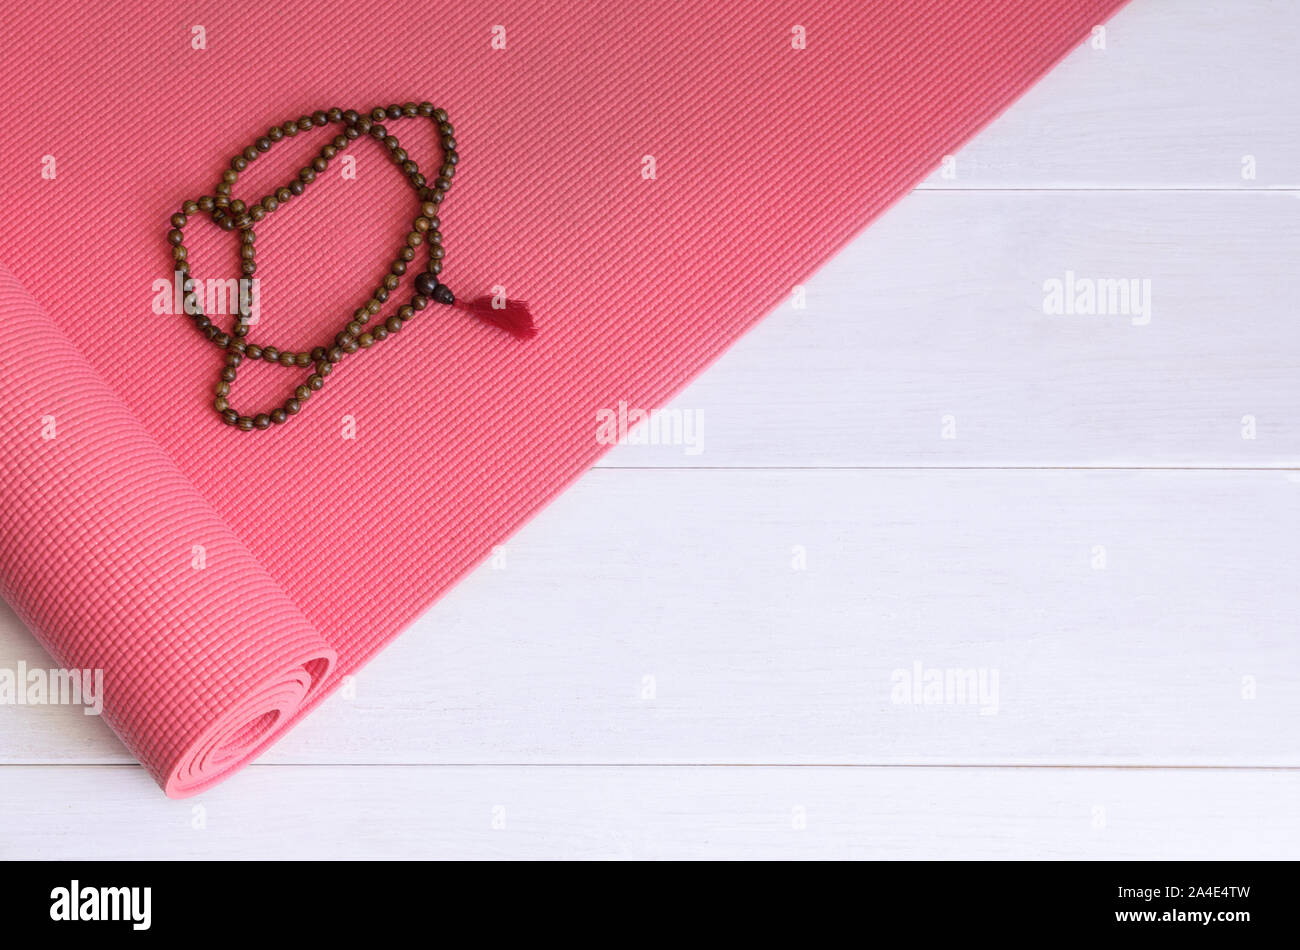 Yoga tappetino rosa con legno mala collana di perle. Yogi sfondo accessori. Copia dello spazio. Foto Stock